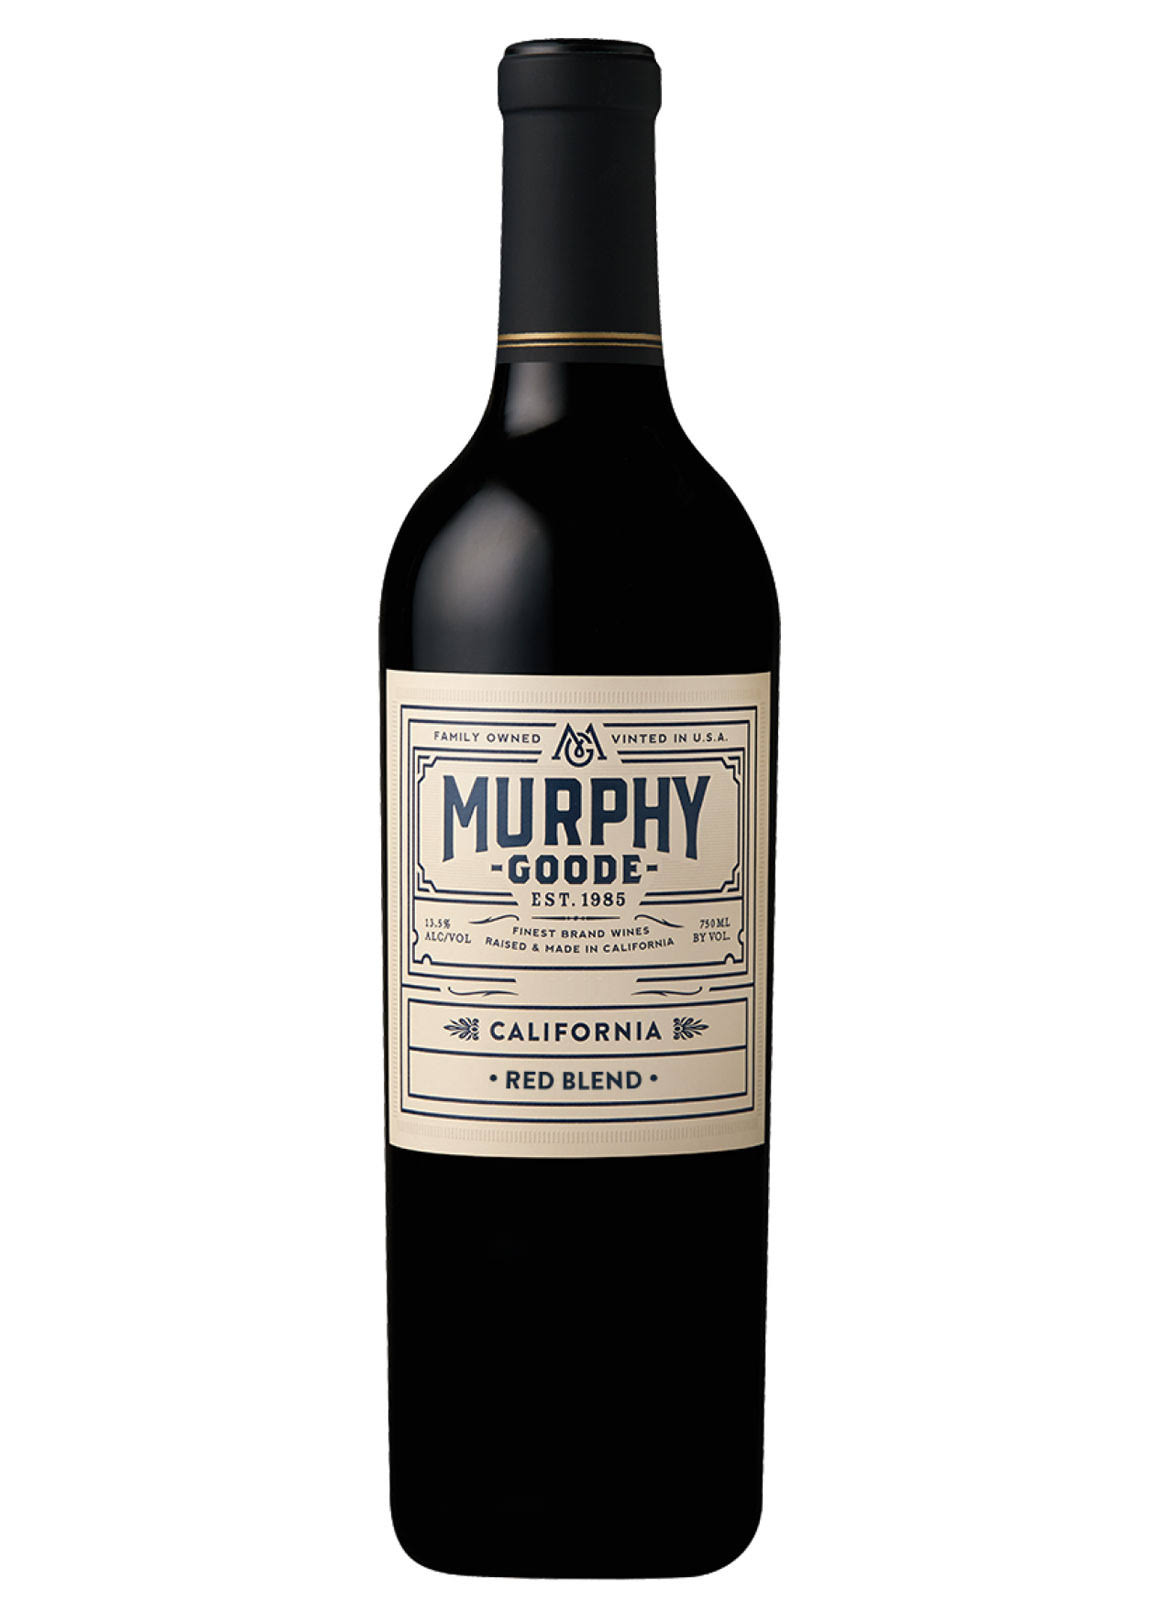 Murphy Goode Red Wine, California, 2013 - 750 ml